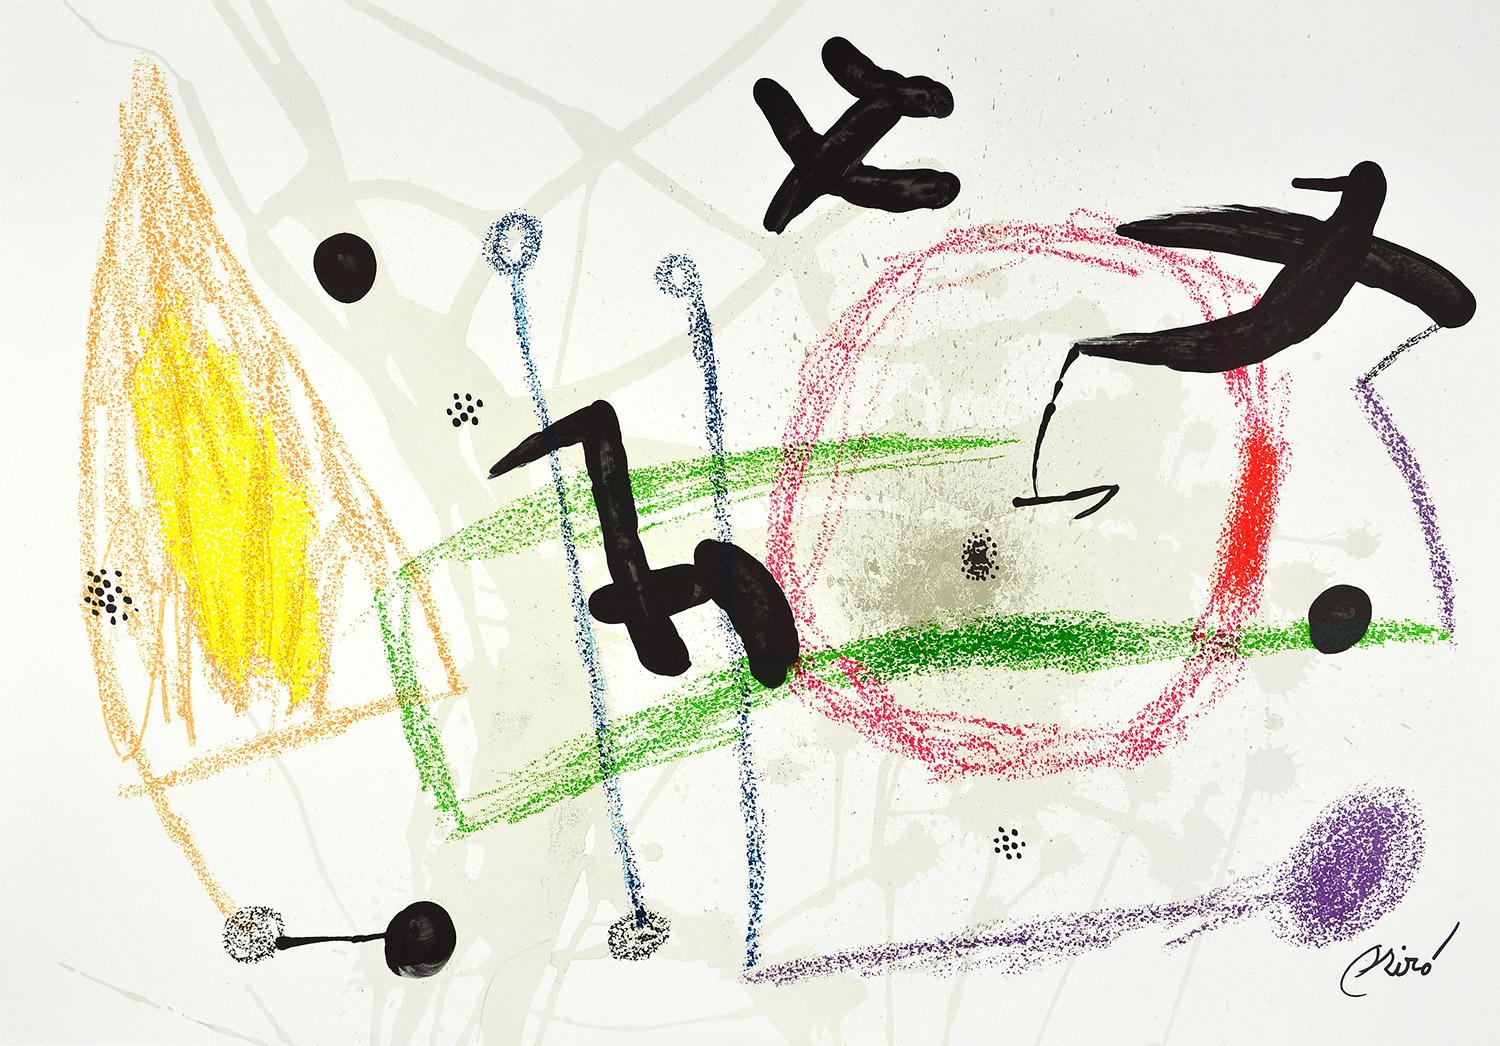 Joan Miró - Maravillas con variaciones acrósticas en el jardín de Miró V
Date of creation: 1975
Medium: Lithograph on Gvarro paper
Edition: 1500
Size: 49,5 x 71 cm
Observations: Lithograph on Gvarro paper plate signed. Edited by Polígrafa,